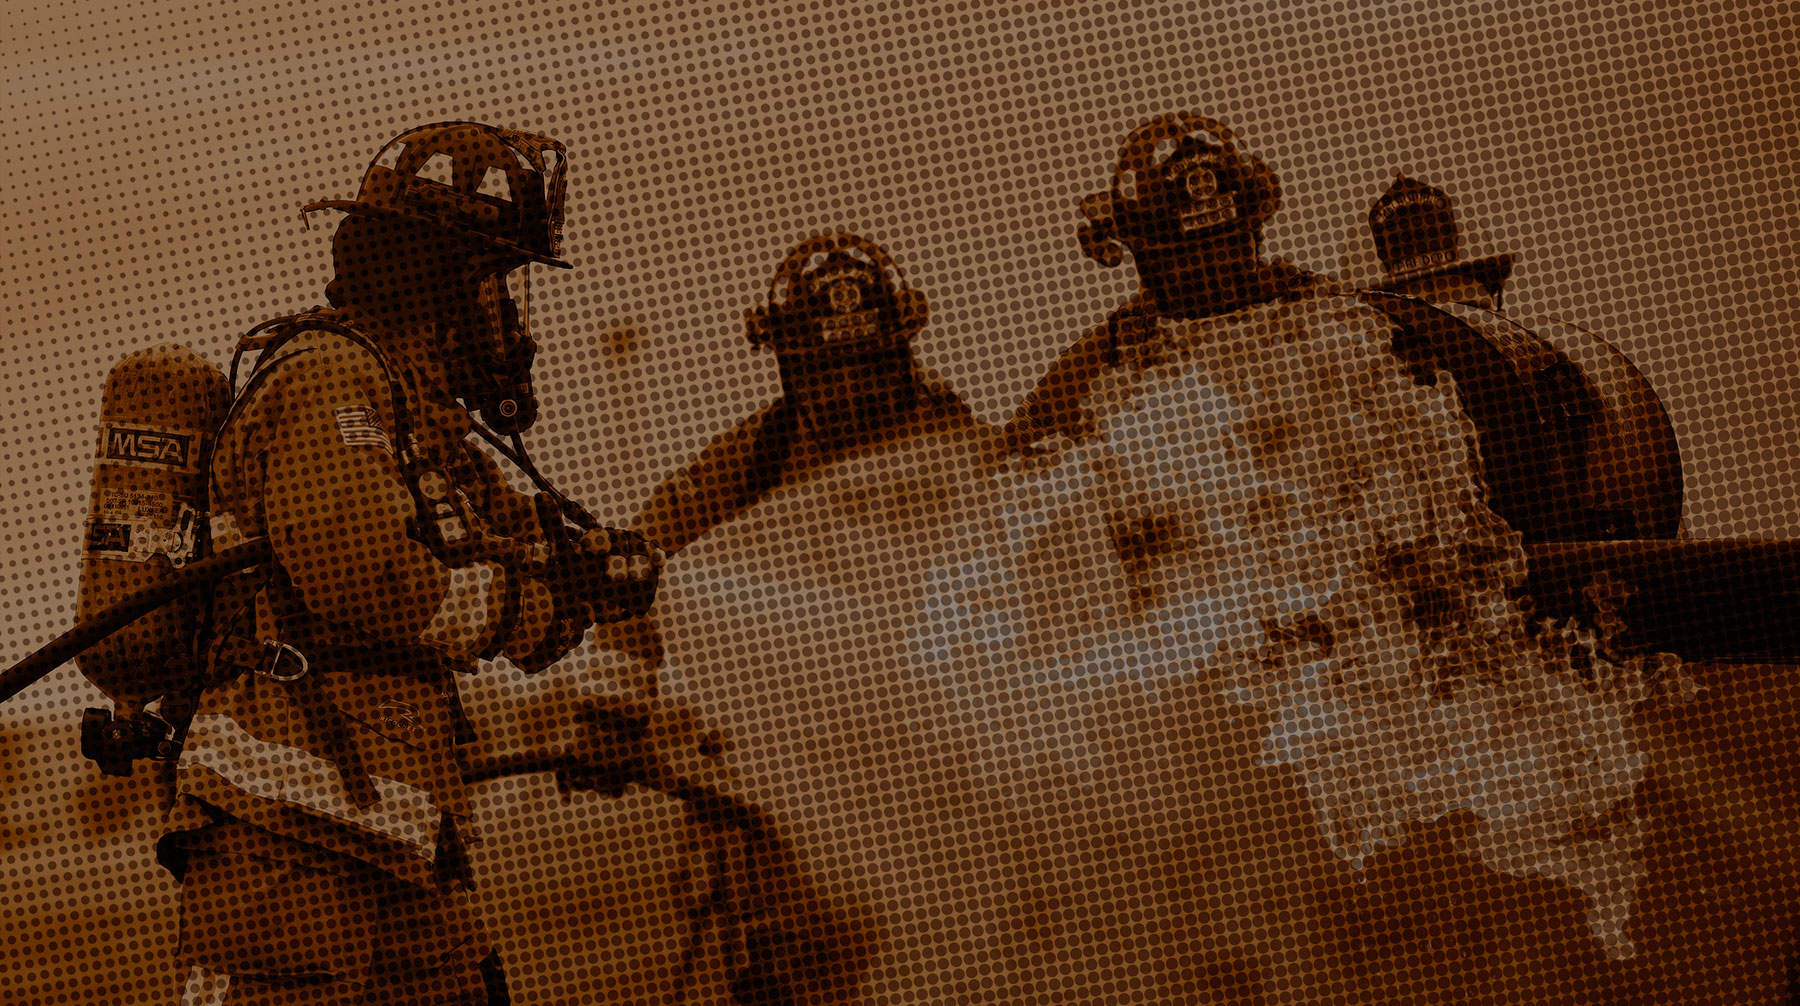 Пожар тушат более 40 сотрудников МЧС, задействовано 13 единиц техники undefined